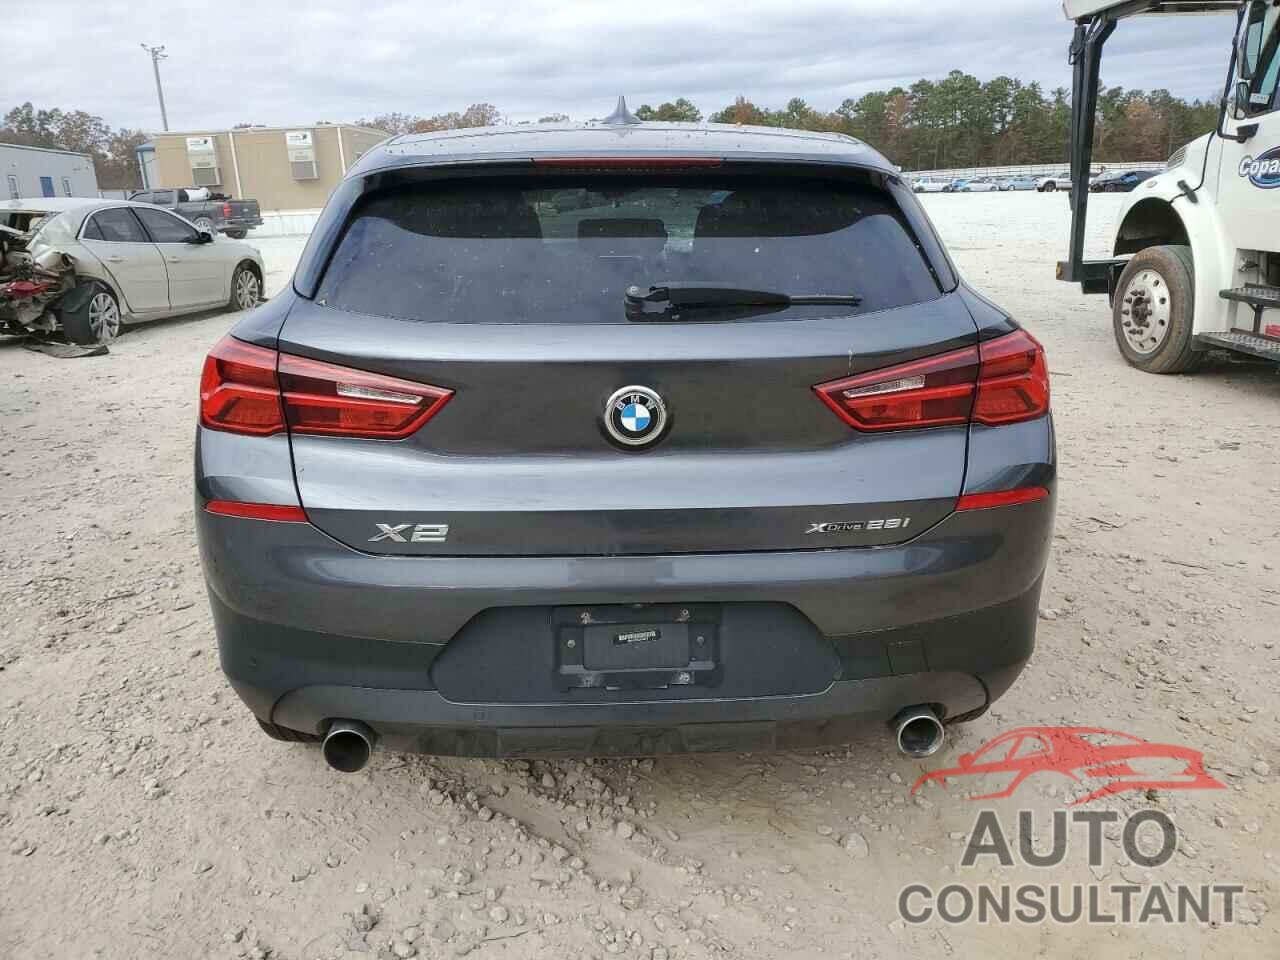 BMW X2 2018 - WBXYJ5C35JEF80178